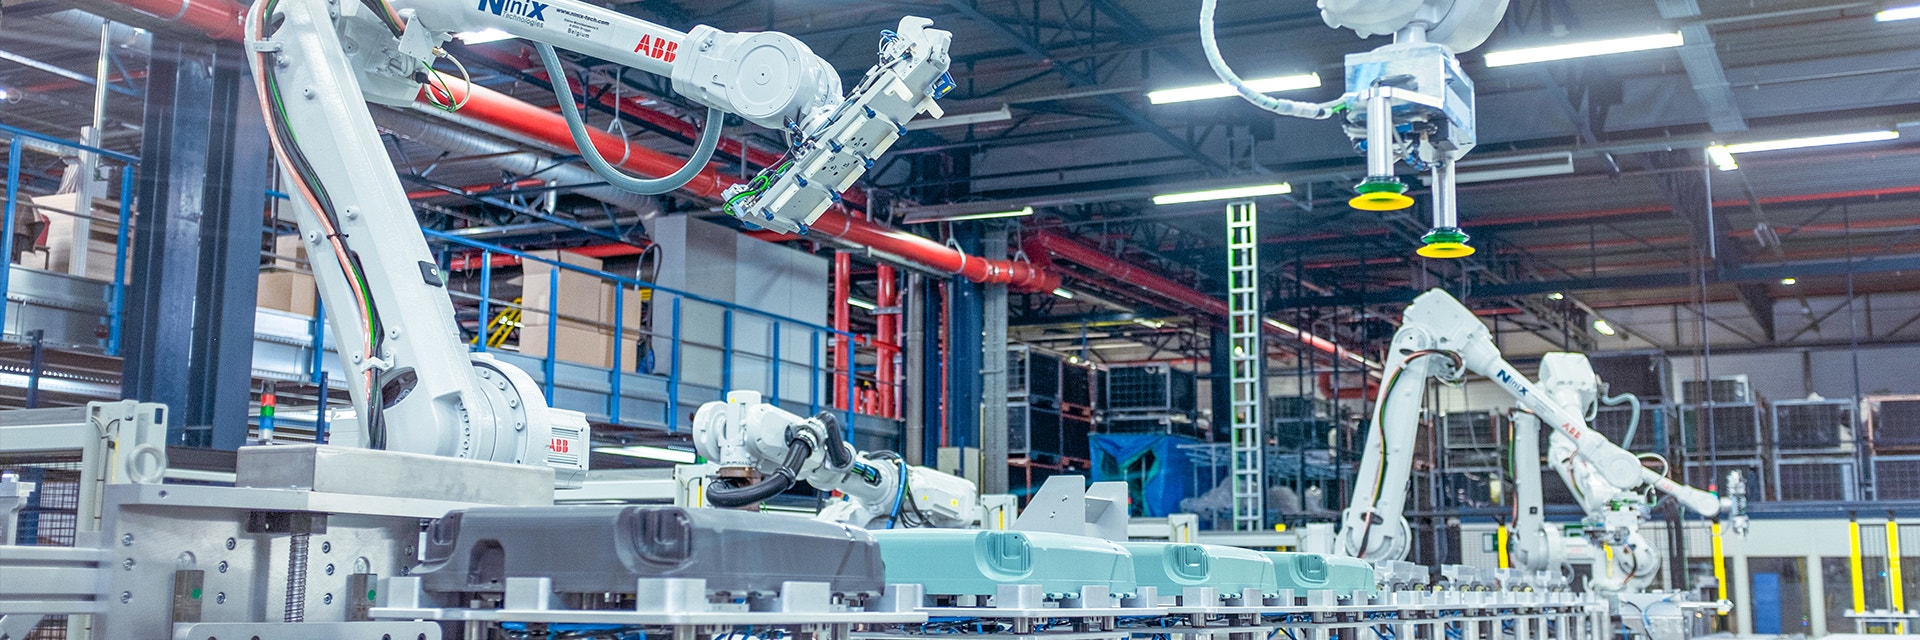 Grandes robots ABB están ensamblando una serie de maletas Samsonite en una línea de producción.